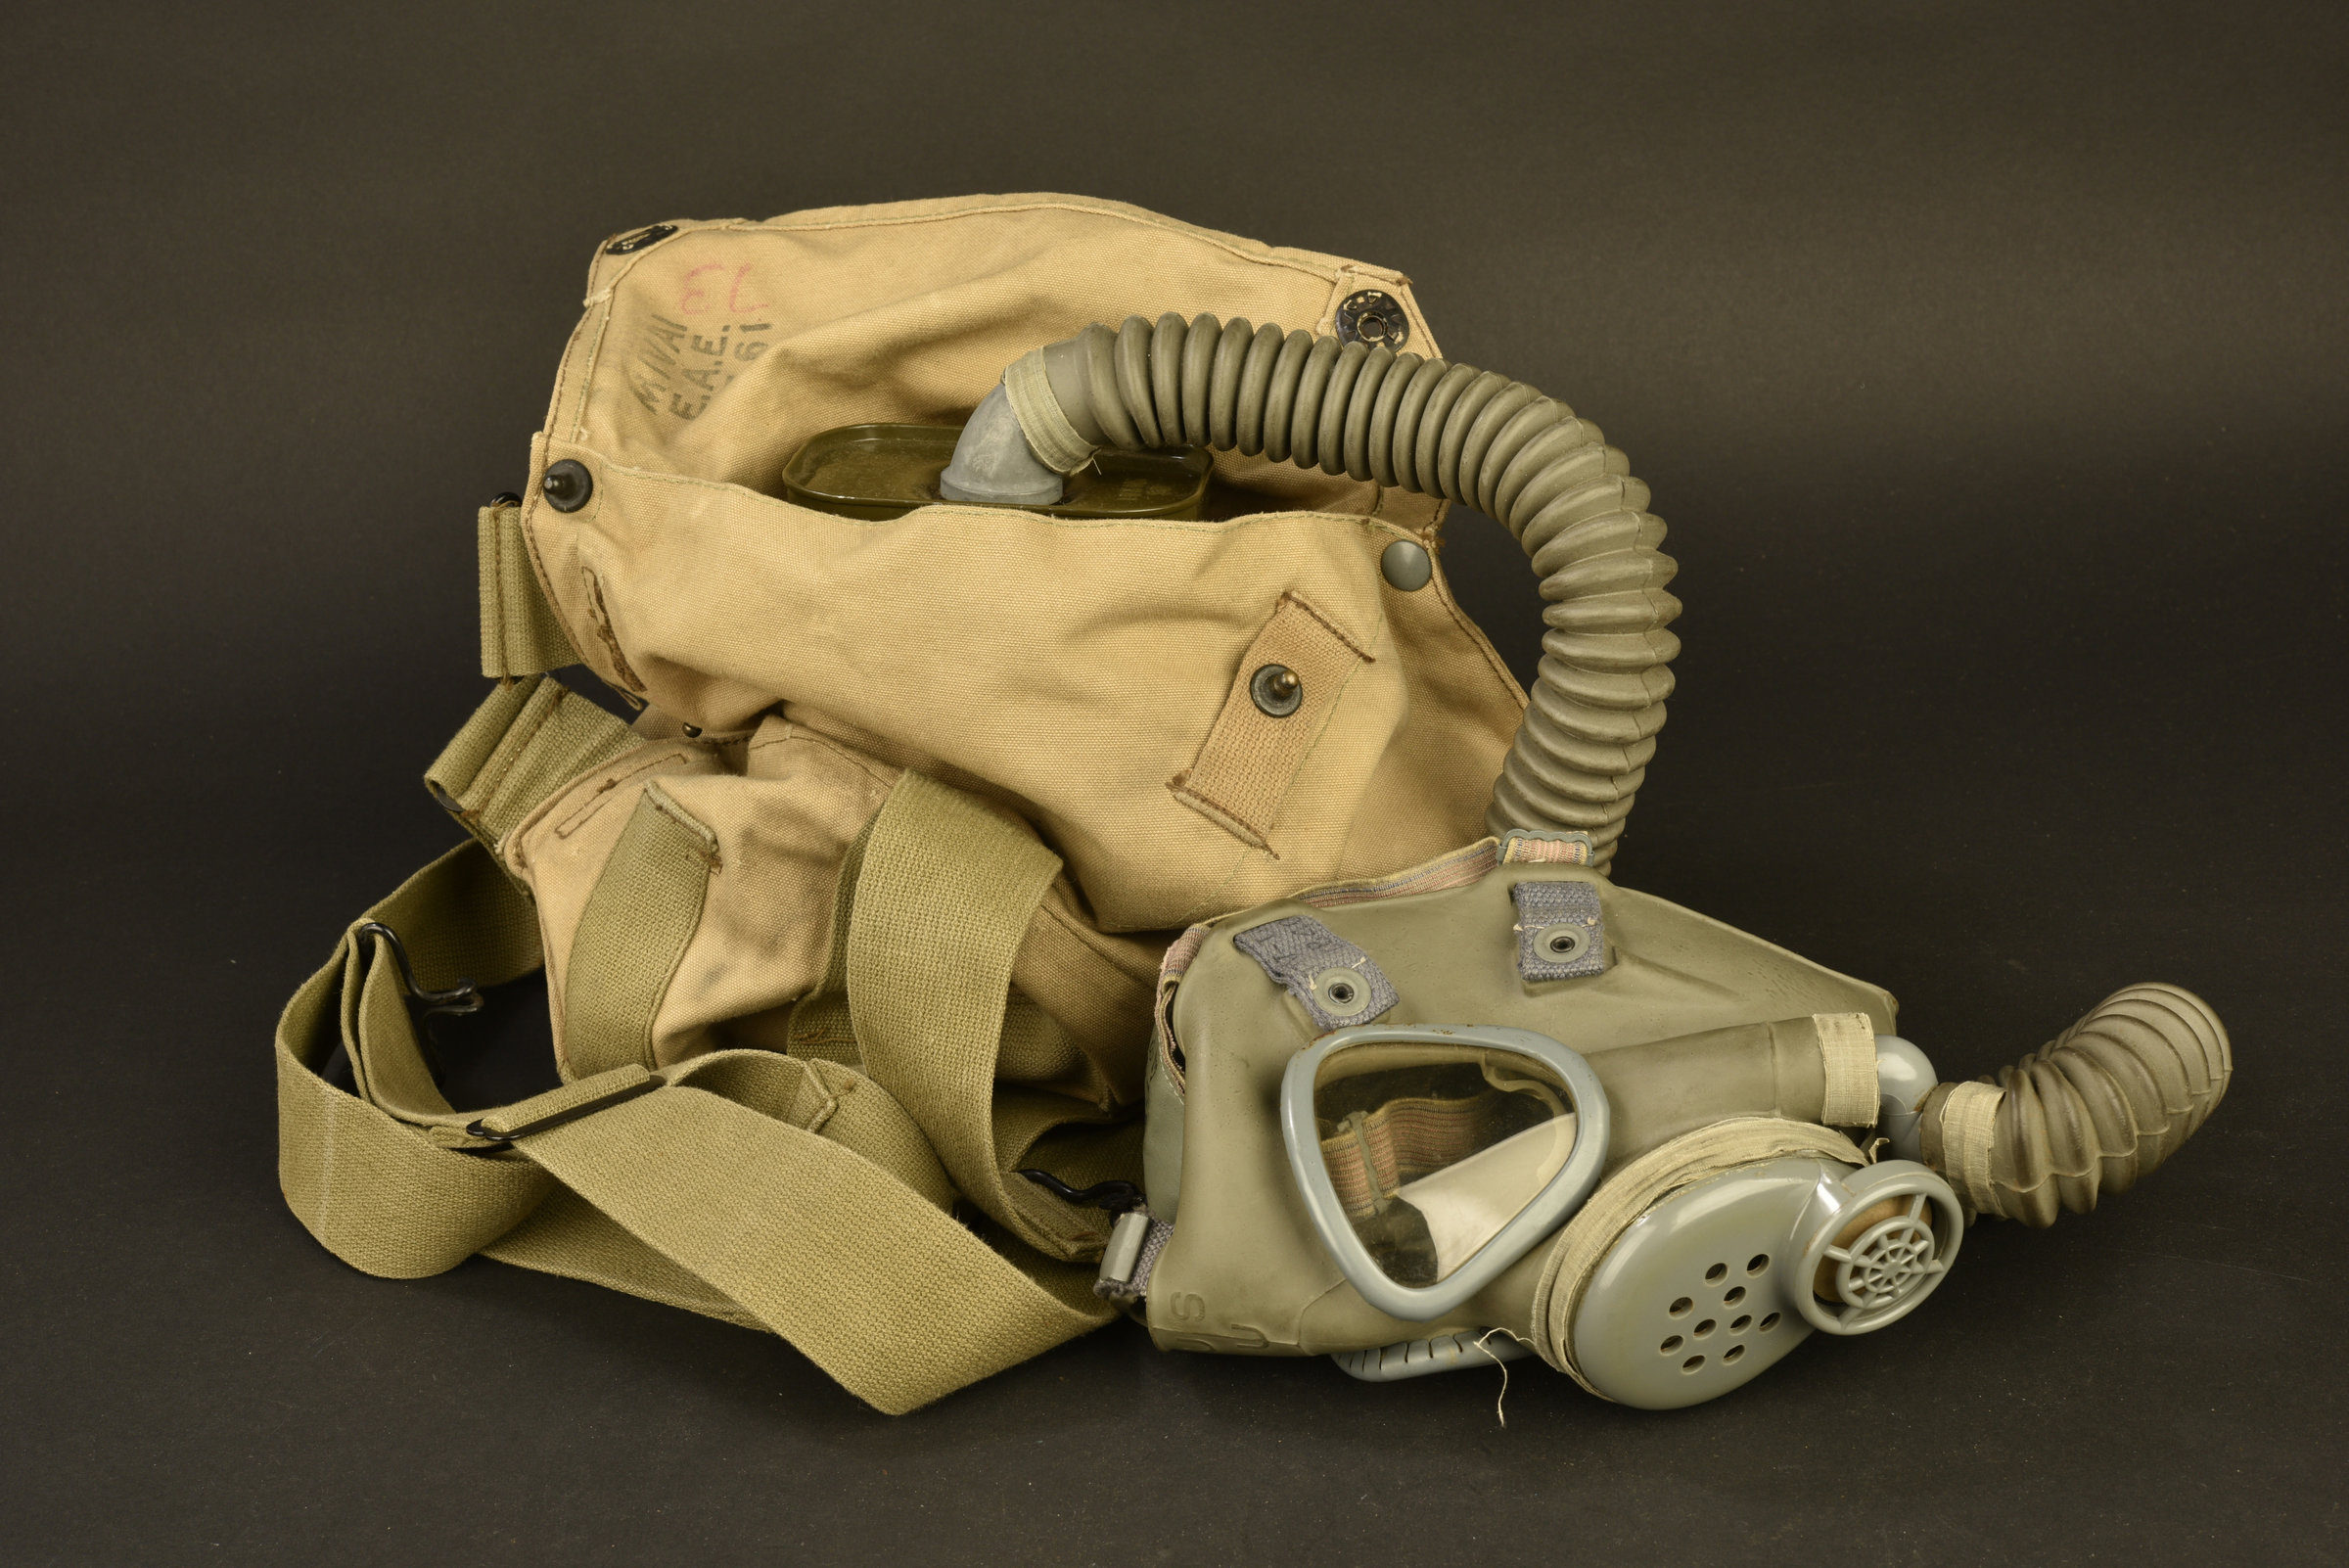 Masque à Gaz de Service, US Army, M2A2